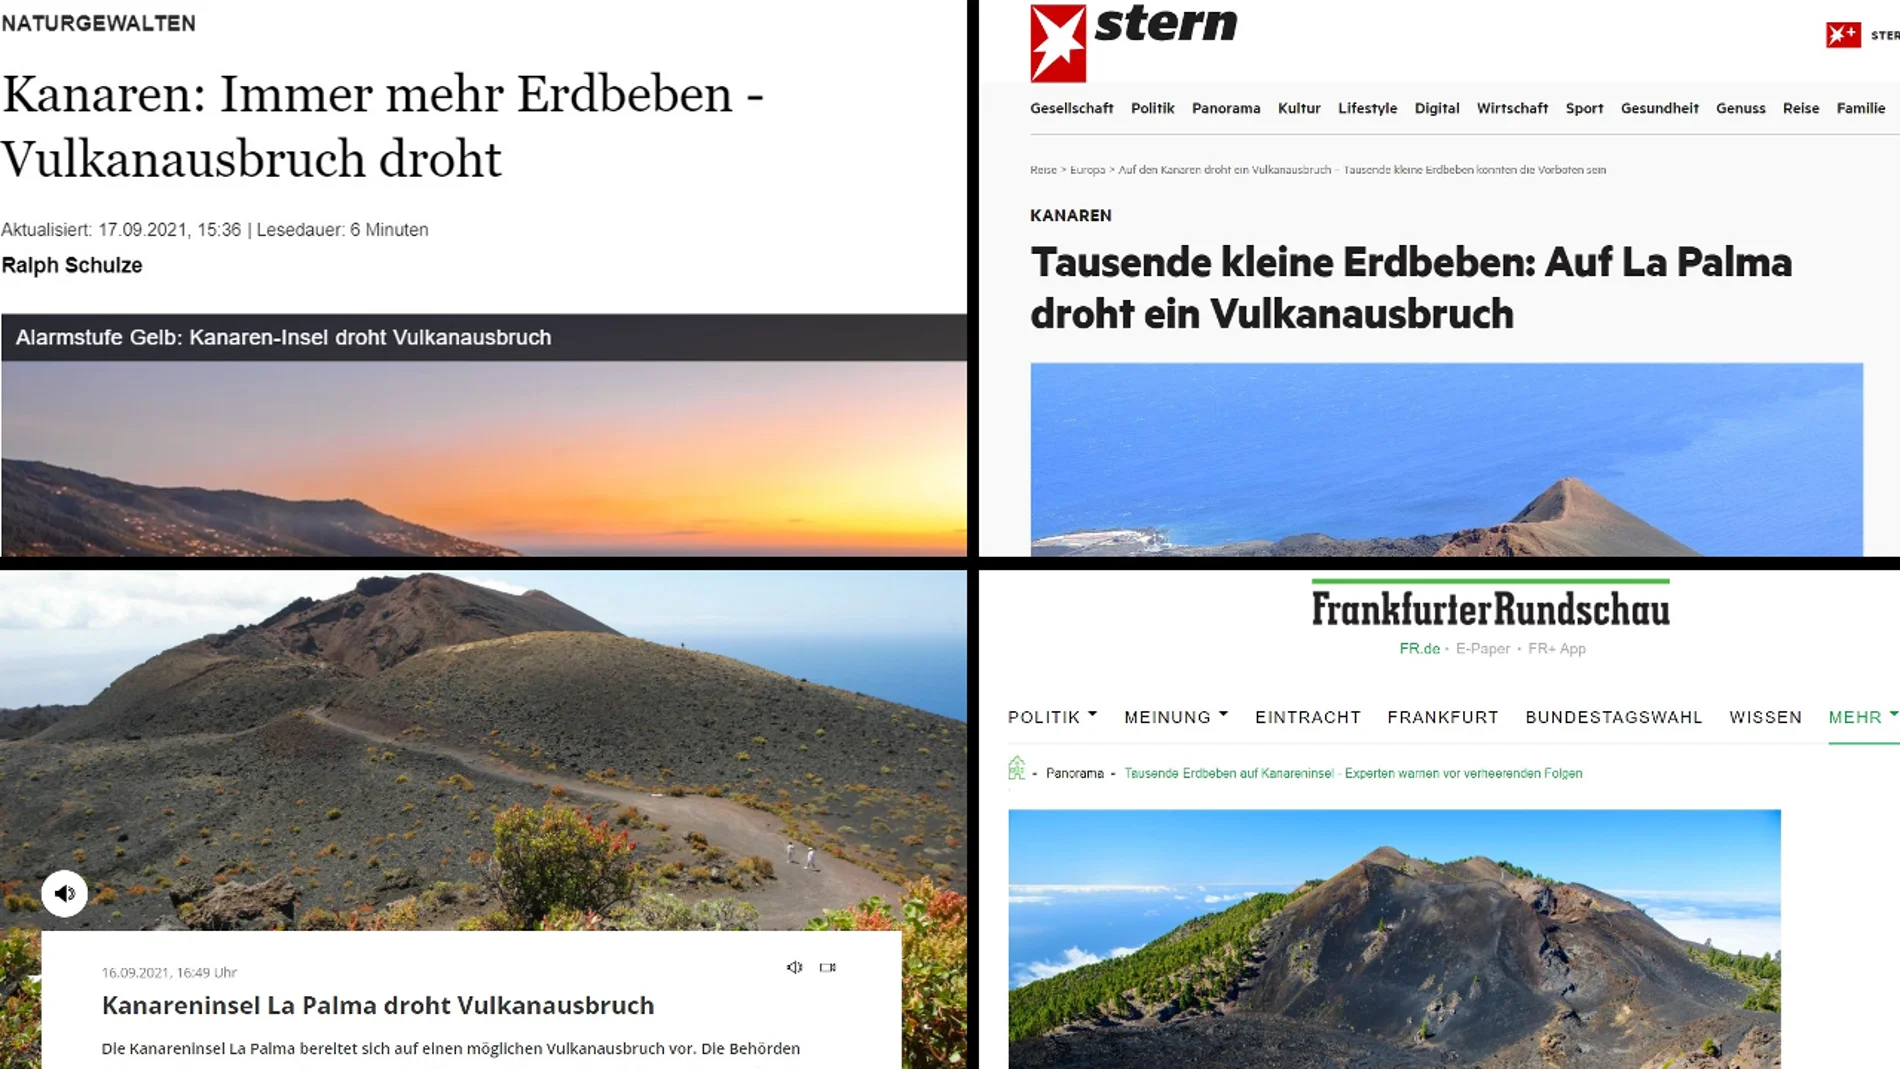 La posible erupción del volcán en La Palma lidera las búsquedas de Google en los medios alemanes 